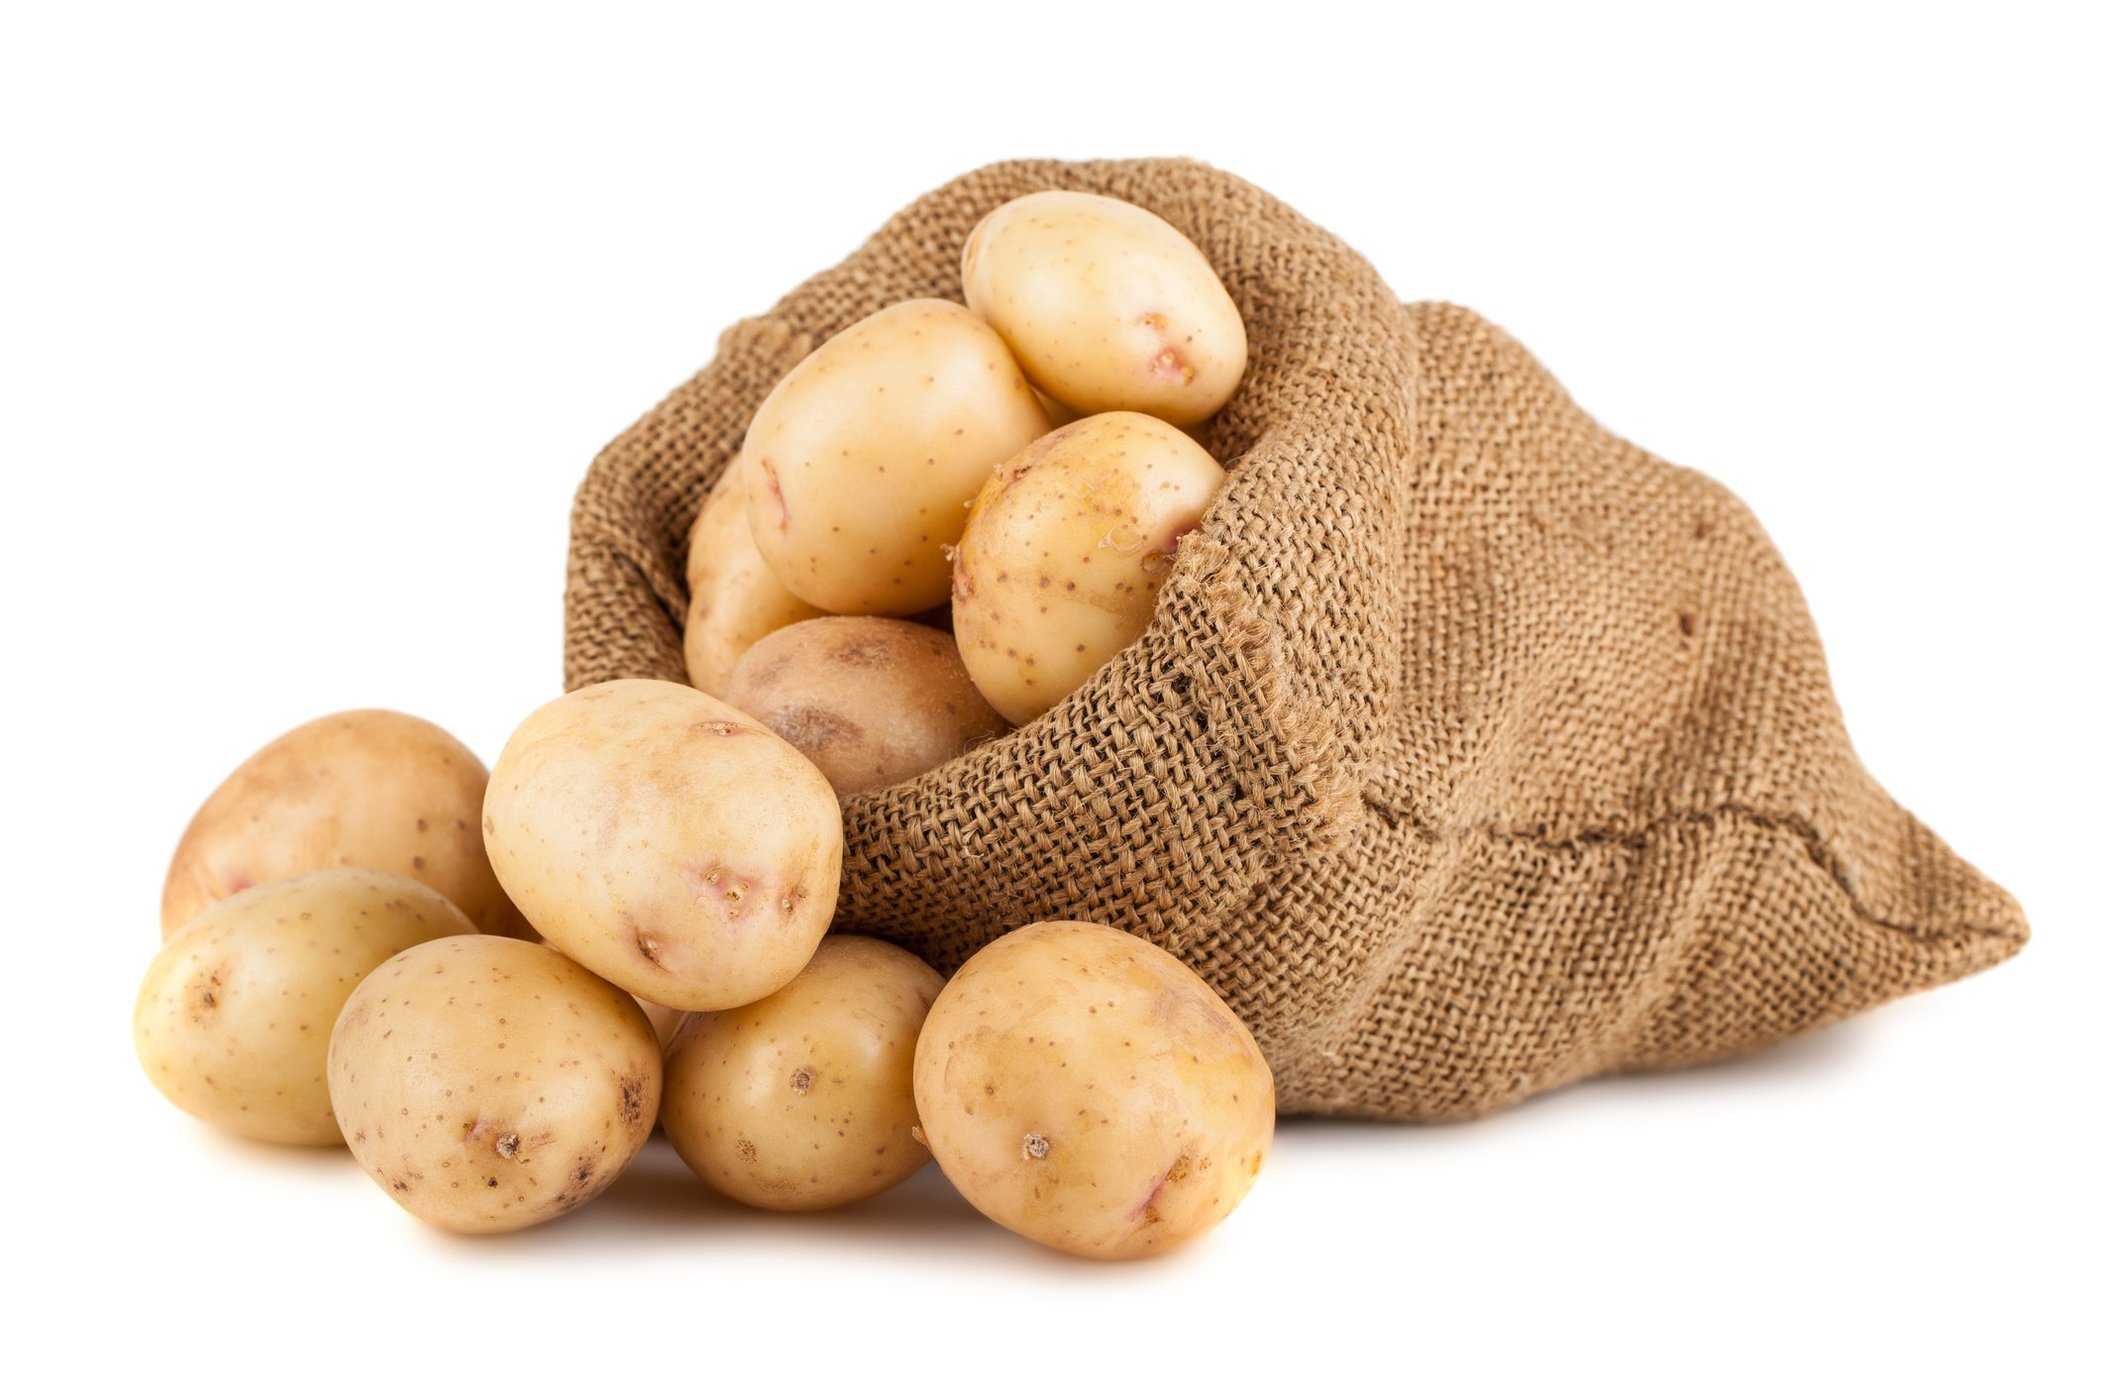 تناول الكثير من البطاطس يمكن أن يكون ضارًا بالحمل